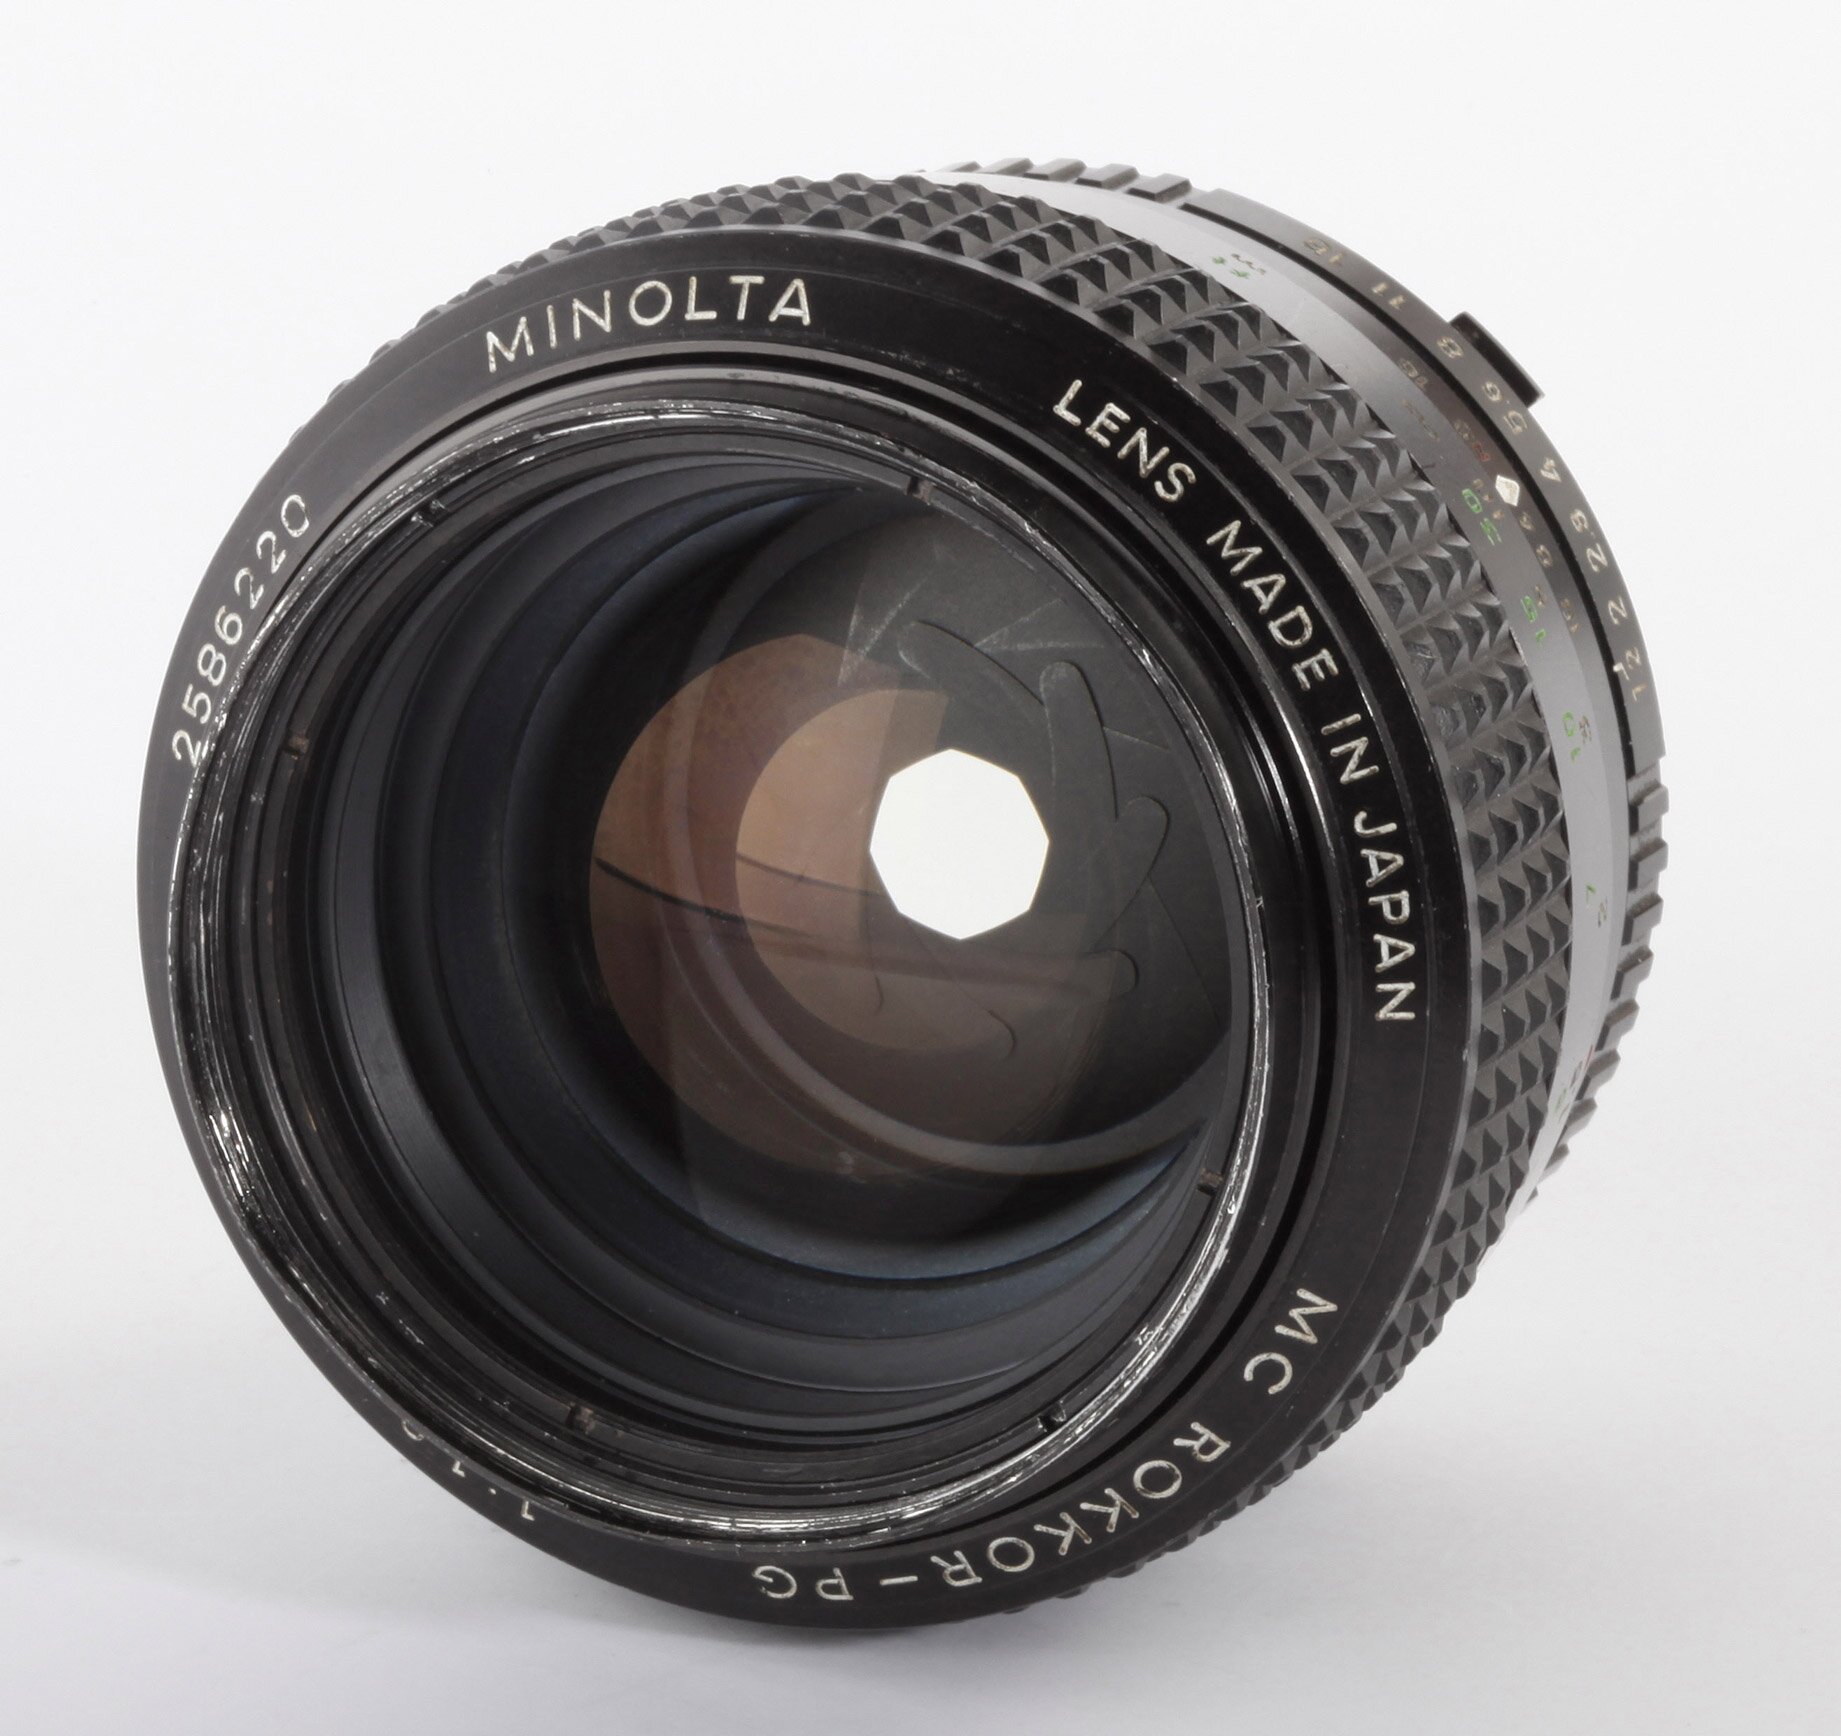 Minolta MC Rokkor-PG 1,2/58mm